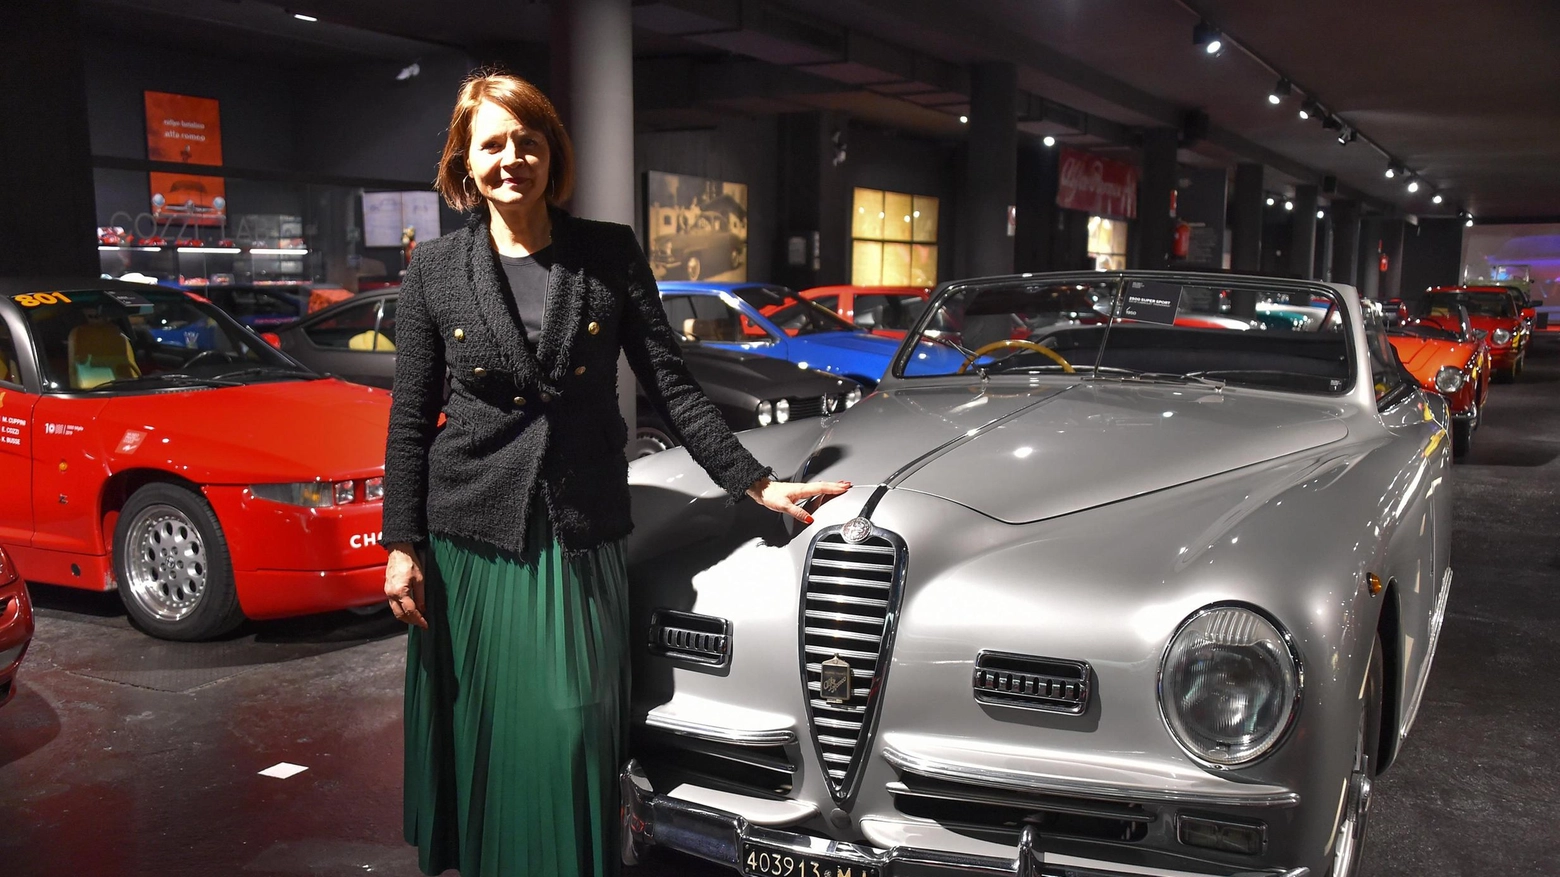 A Legnano, Elisabetta Cozzi presenta il progetto "Woman in Power" al Museo Fratelli Cozzi, promuovendo una comunicazione non stereotipata nel mondo dei motori. Azioni concrete per contrastare gli stereotipi di genere.